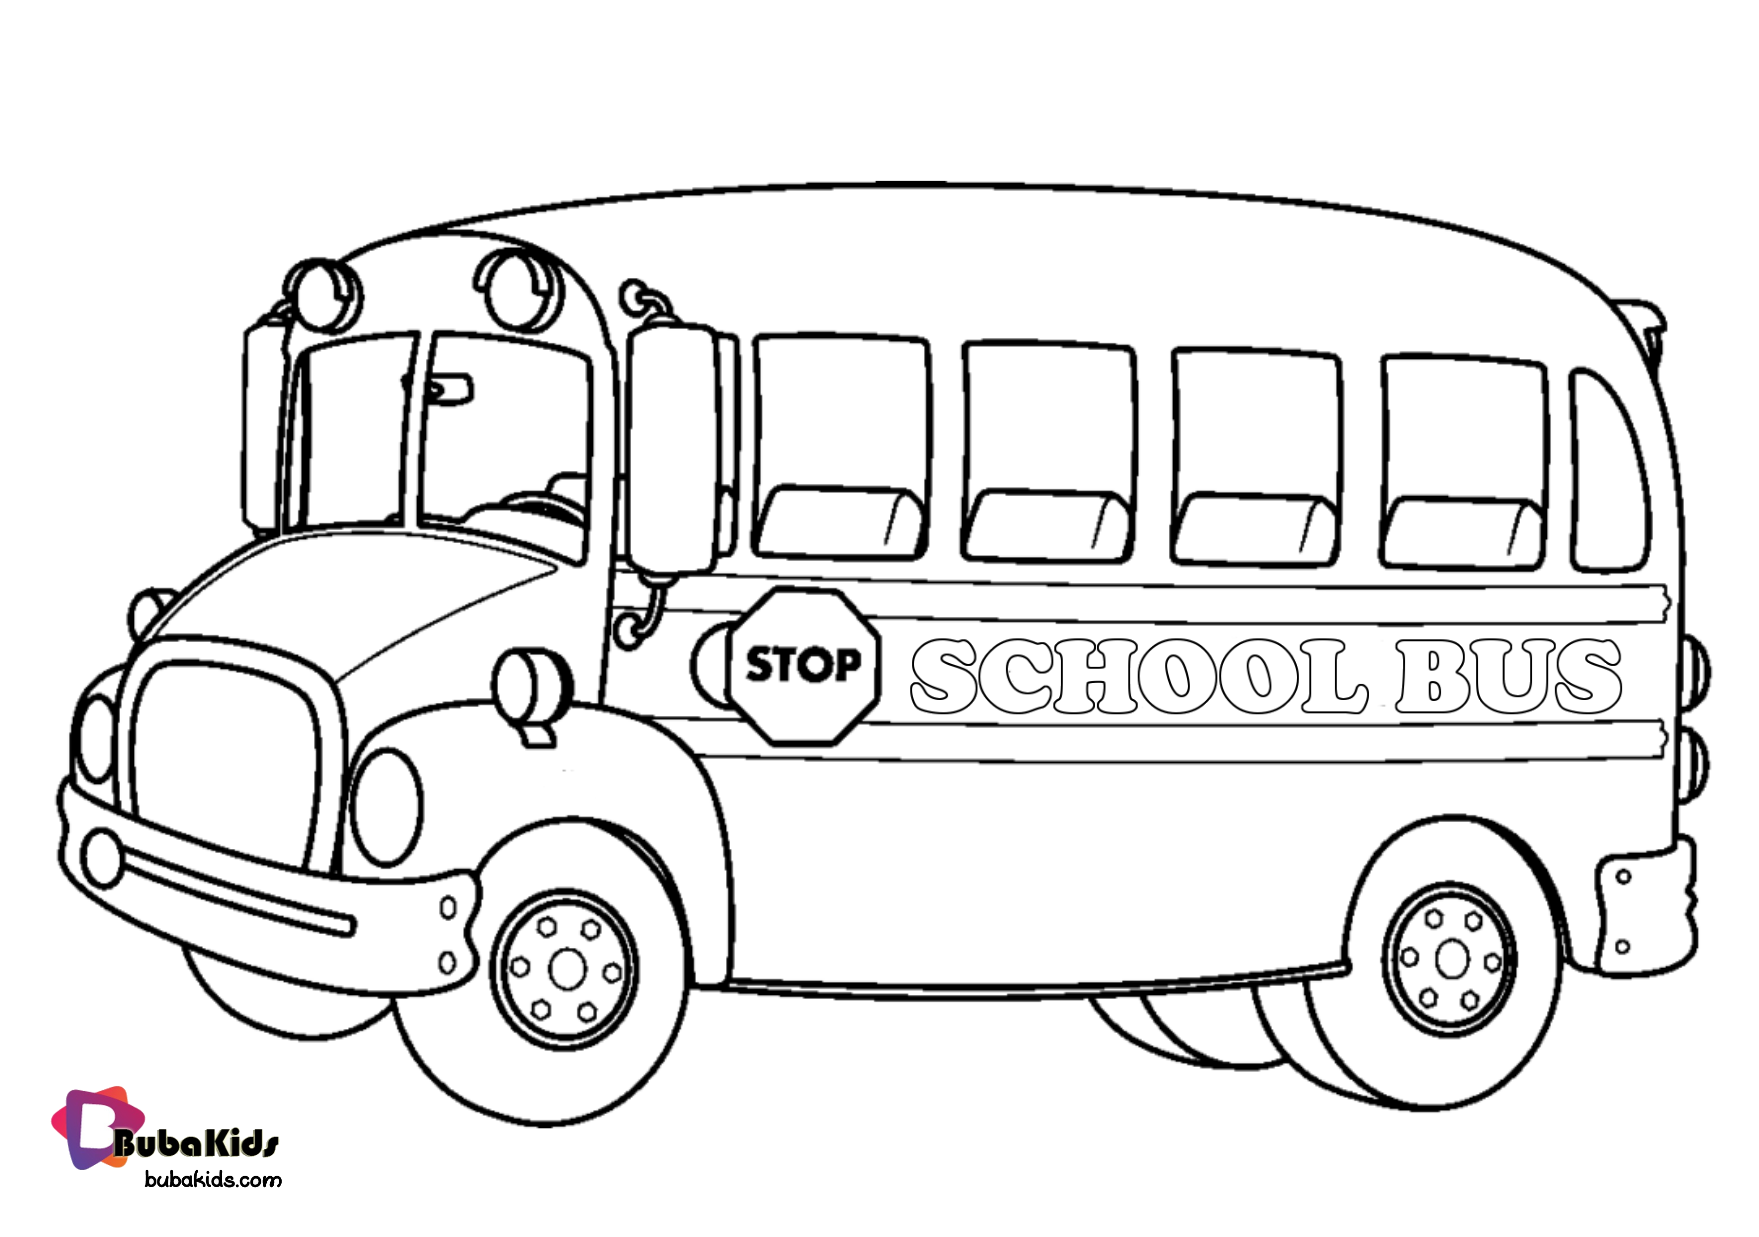 School Bus coloring page. Wallpaper